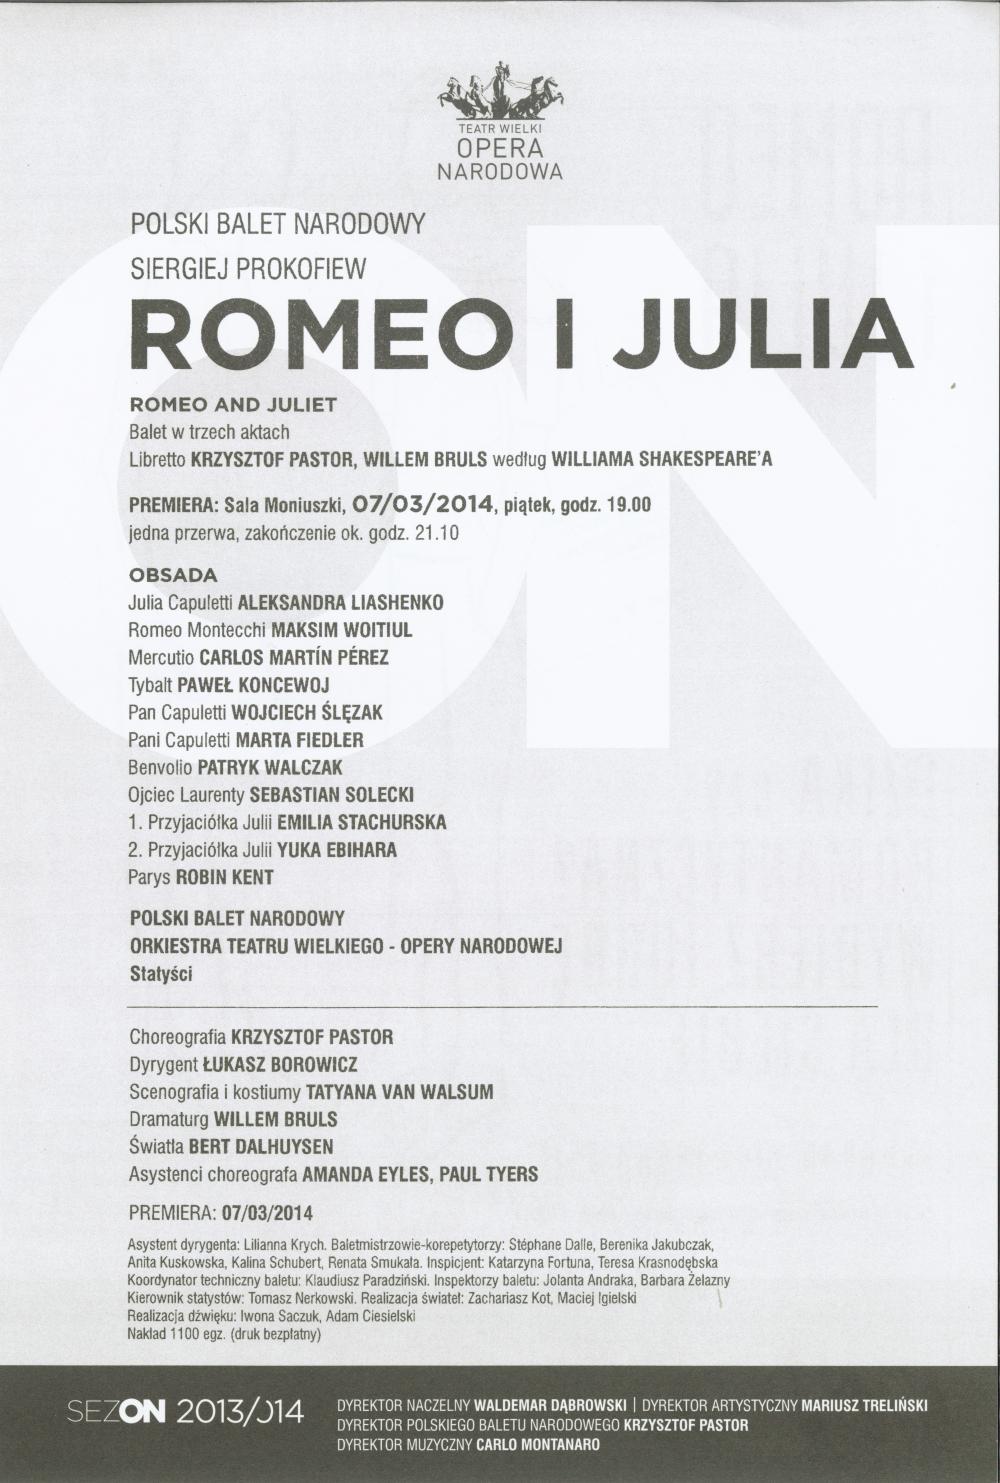 Wkładka obsadowa "Romeo i Julia" Siergiej Prokofiew / Krzysztof Pastor premiera 2014-03-07